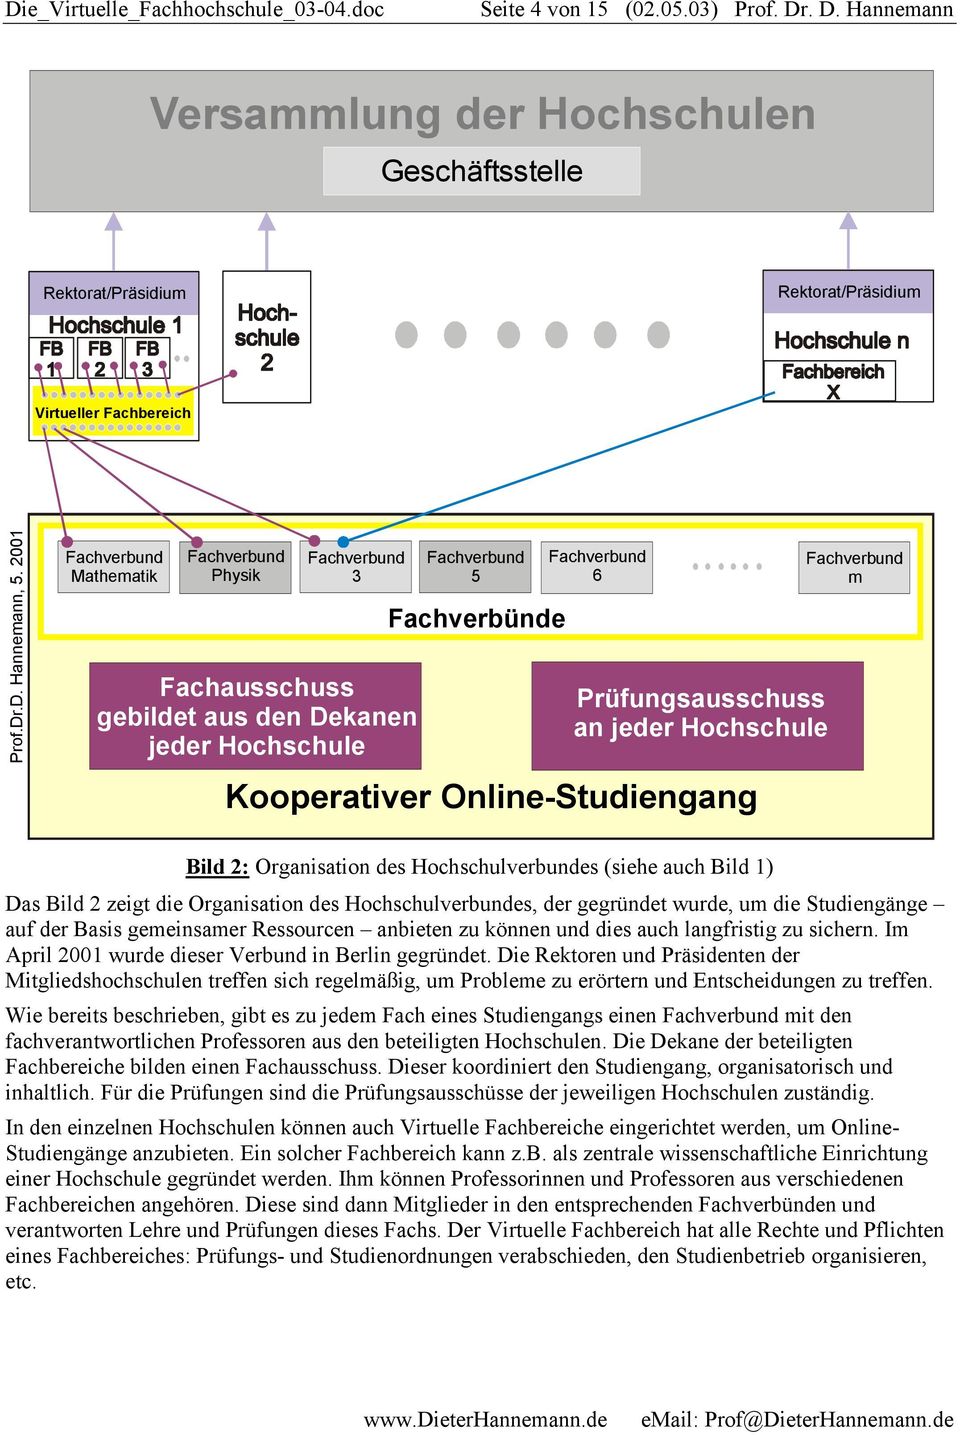 Kooperativer Online-Studiengang Fachverbund m Bild 2: Organisation des Hochschulverbundes (siehe auch Bild 1) Das Bild 2 zeigt die Organisation des Hochschulverbundes, der gegründet wurde, um die